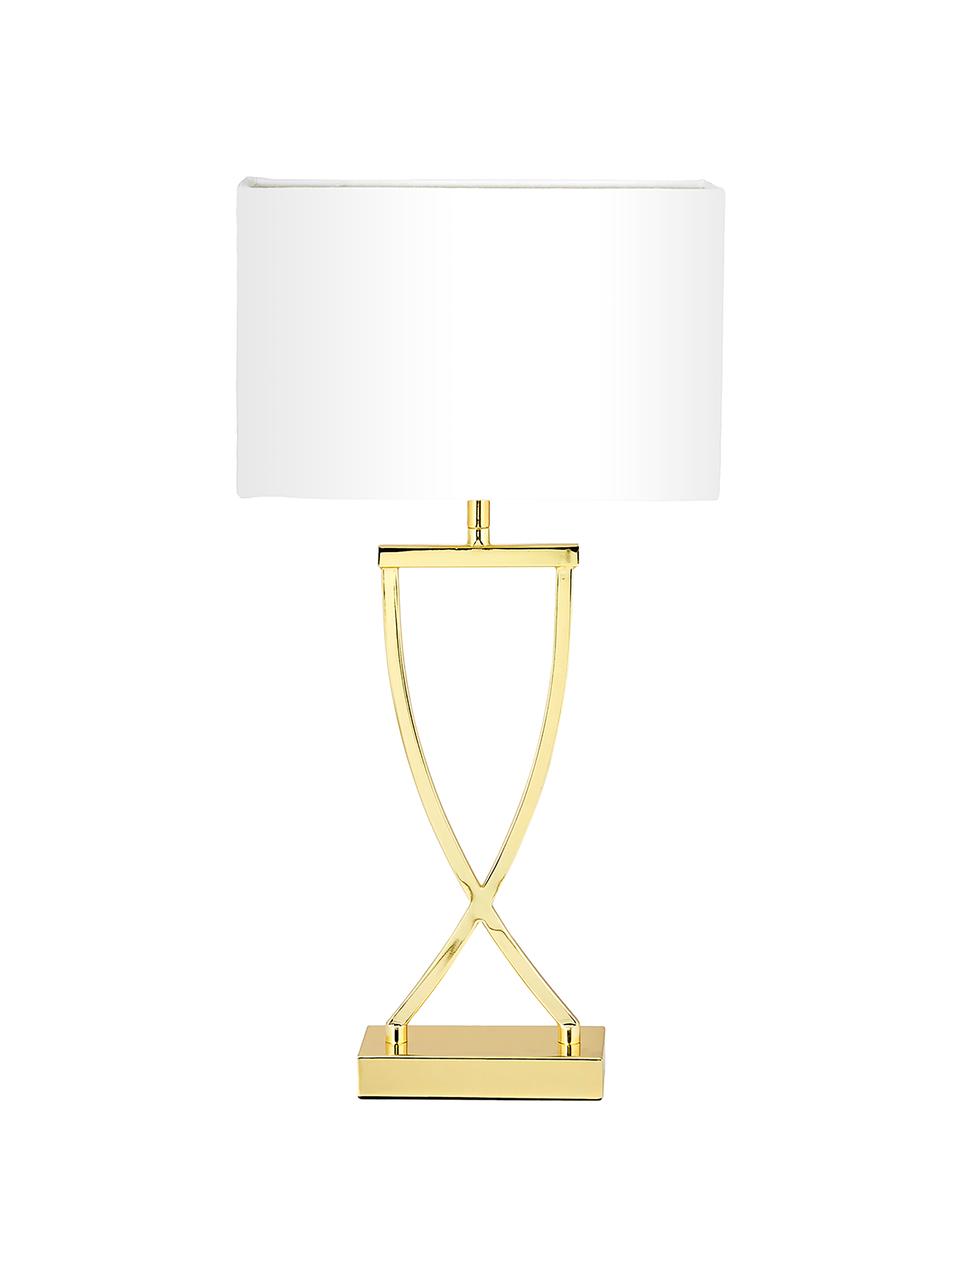 Große Tischlampe Vanessa, Lampenfuß: Metall, Lampenschirm: Textil, Weiß, Goldfarben, B 27 x H 52 cm